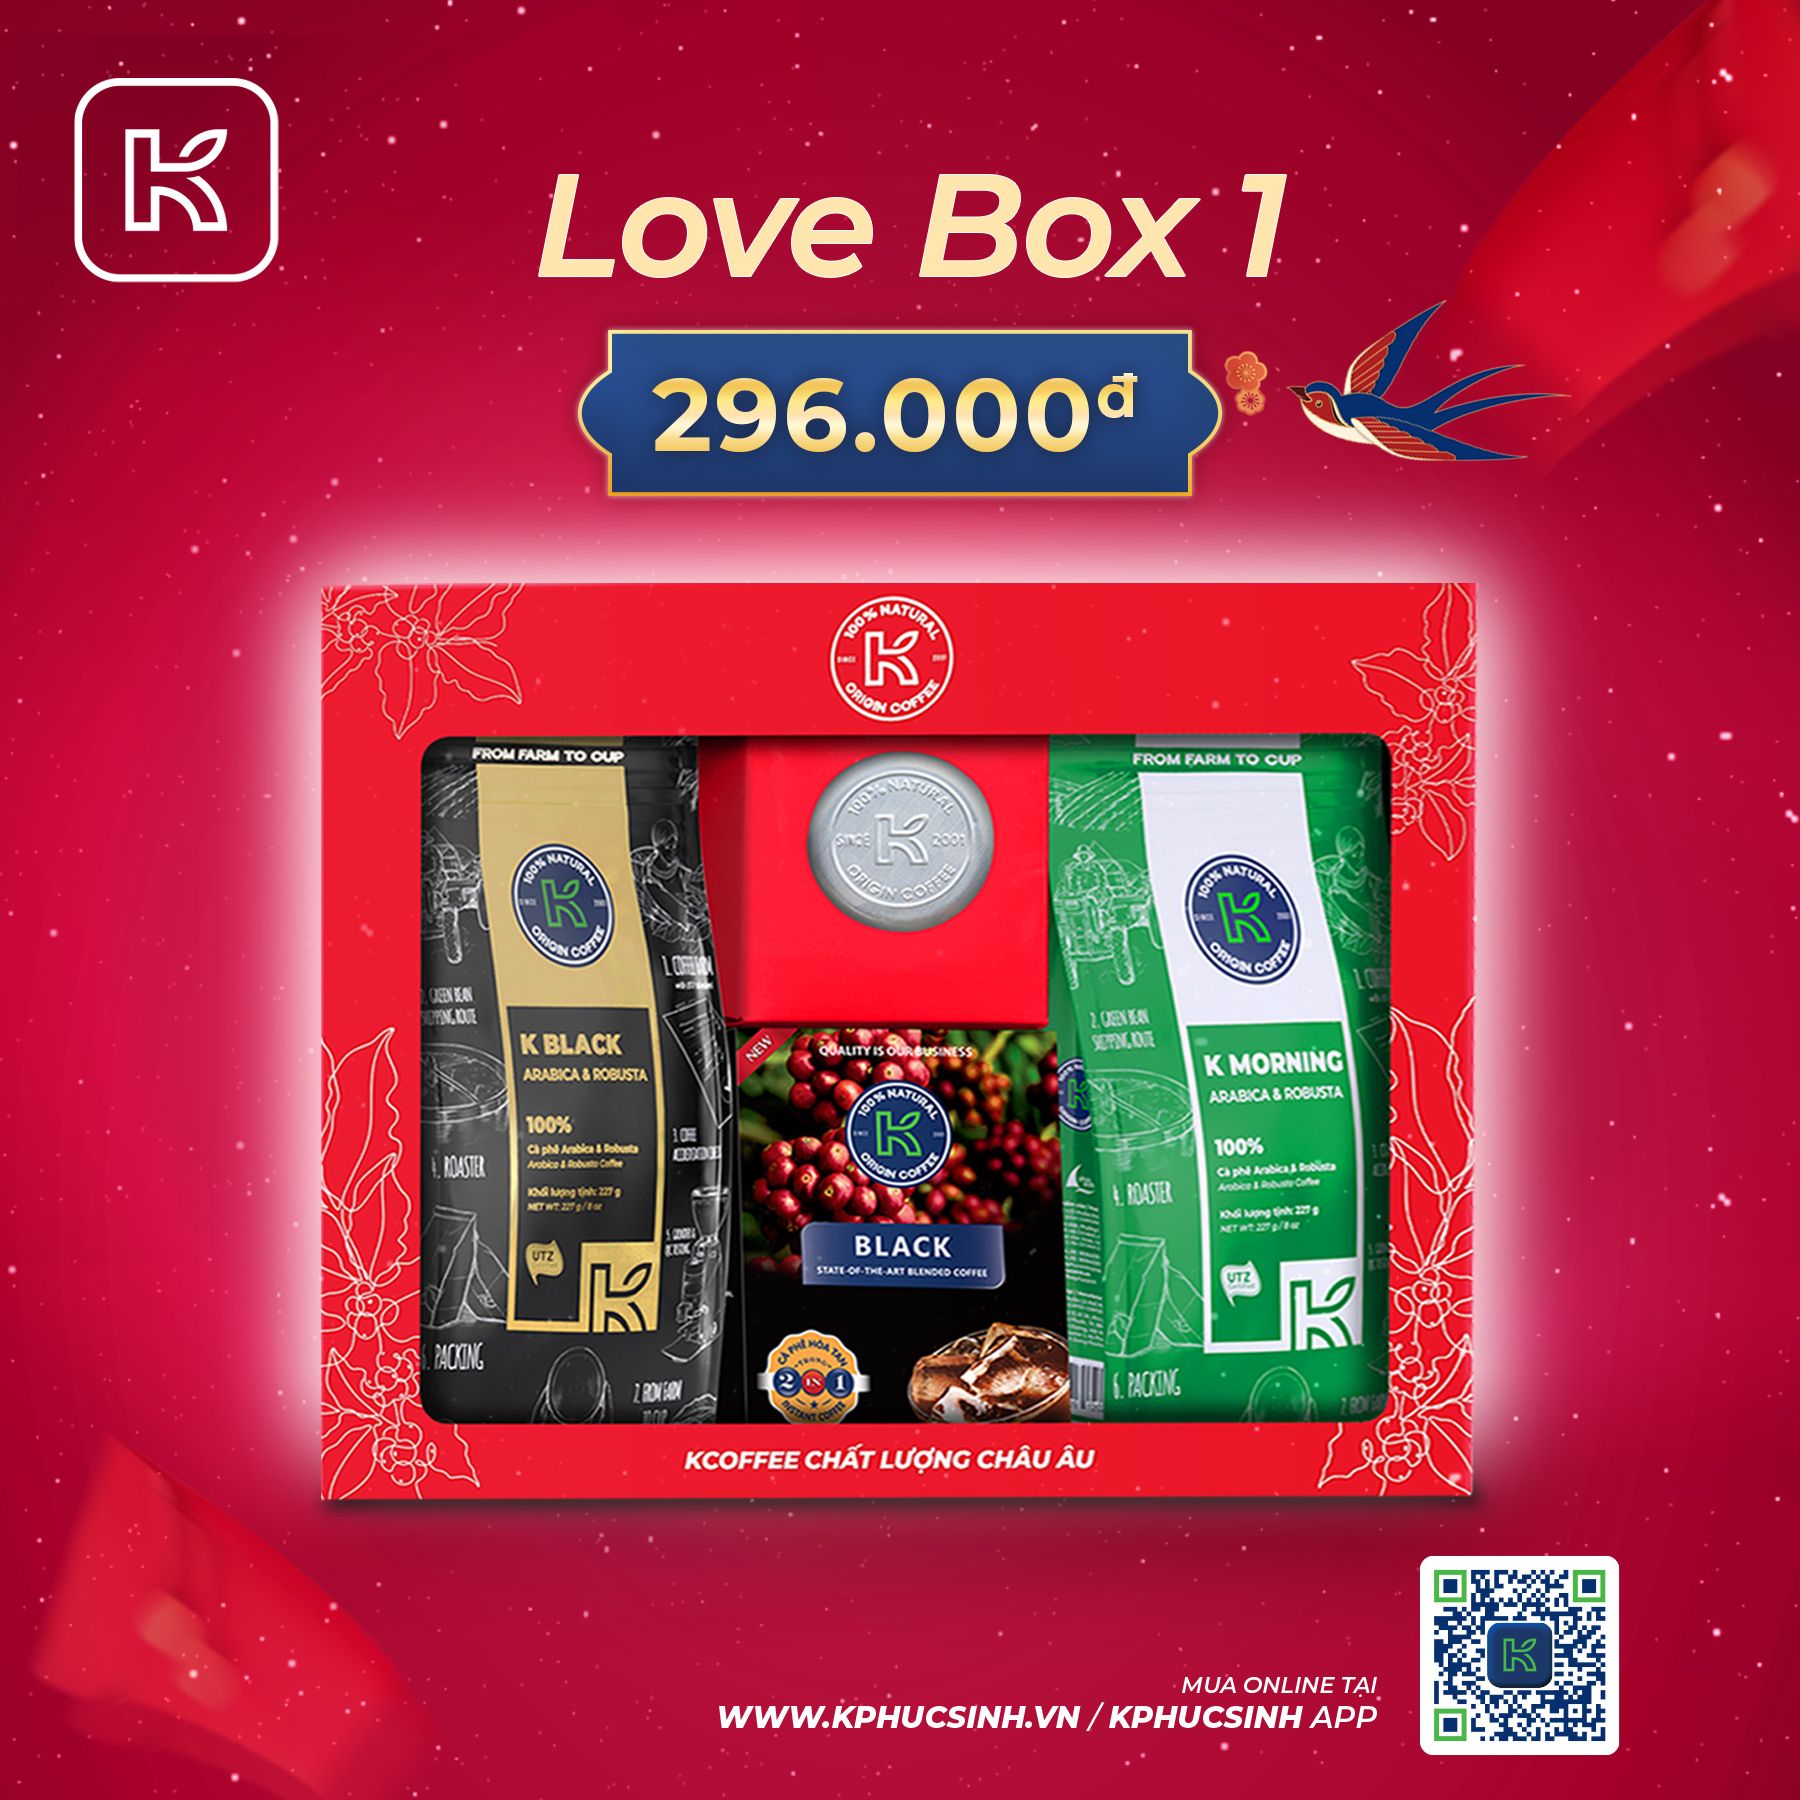 GIFTSET CÀ PHÊ LOVE BOX 1